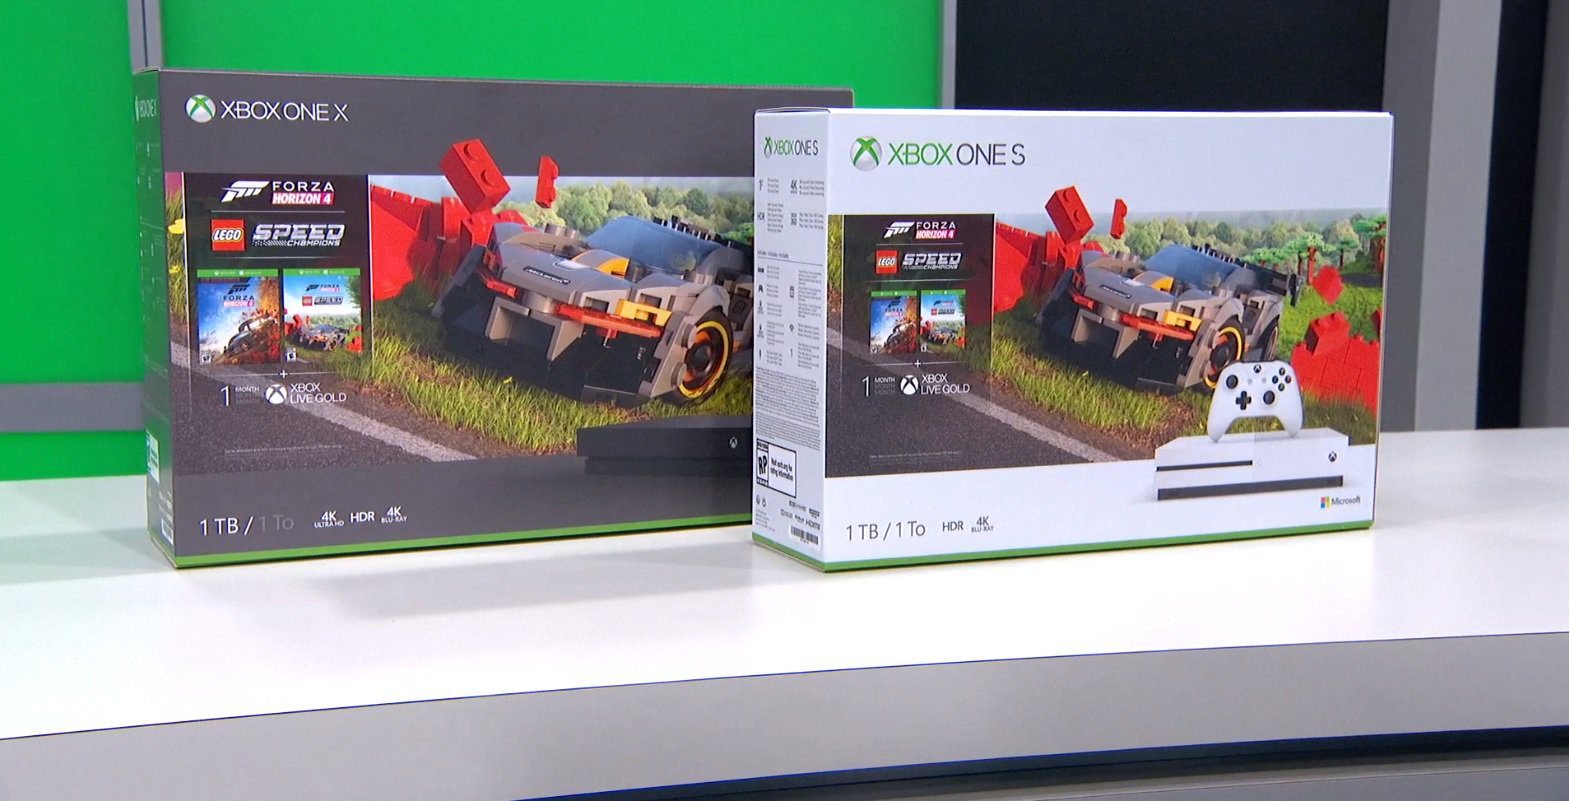 Sie könnten viel schlimmer sein als dieses Forza Horizon 4 + LEGO Forza Xbox-Bundle